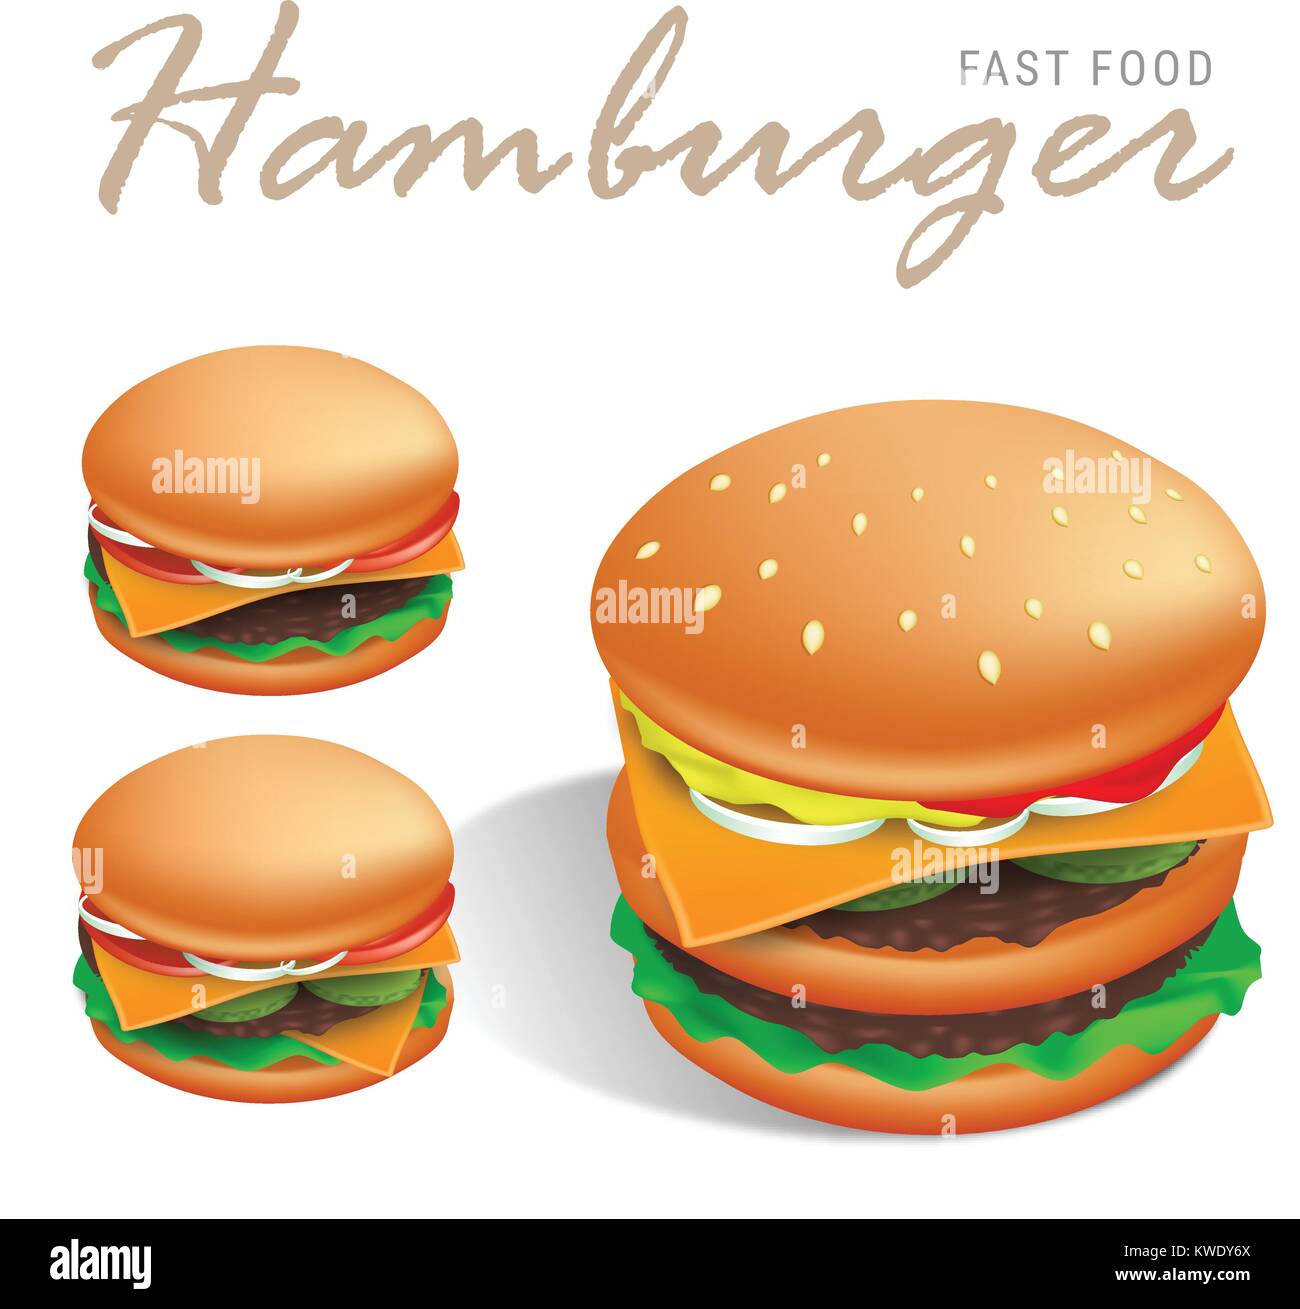 Doppel american Cheeseburger Vector Illustration mit weißem Hintergrund - Sesambrötchen, Rindersteaks, Käse, Tomaten und Salat sowohl mit speziellen Sauce Stock Vektor